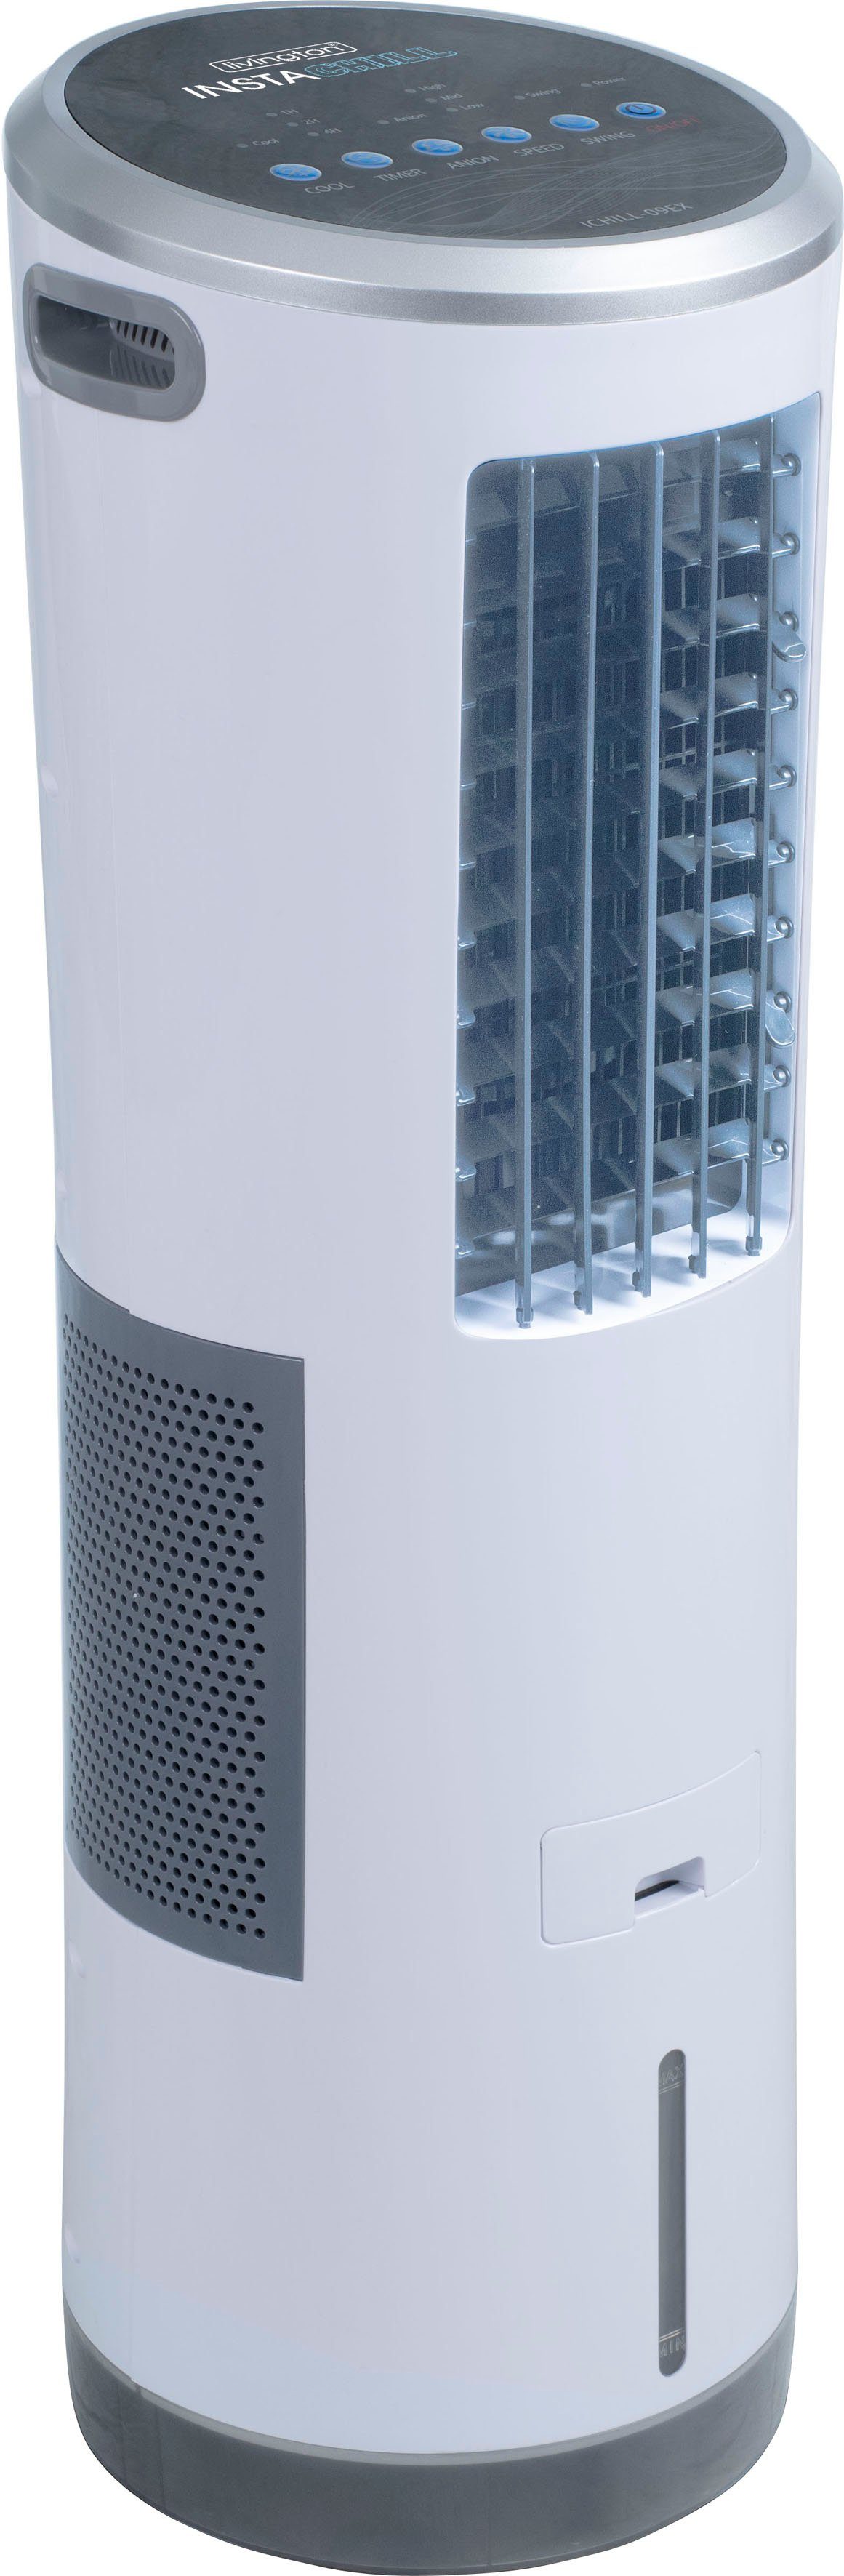 mediashop ventilator-combiapparaat instachill luchtkoeler, 8,5 l inhoud wit